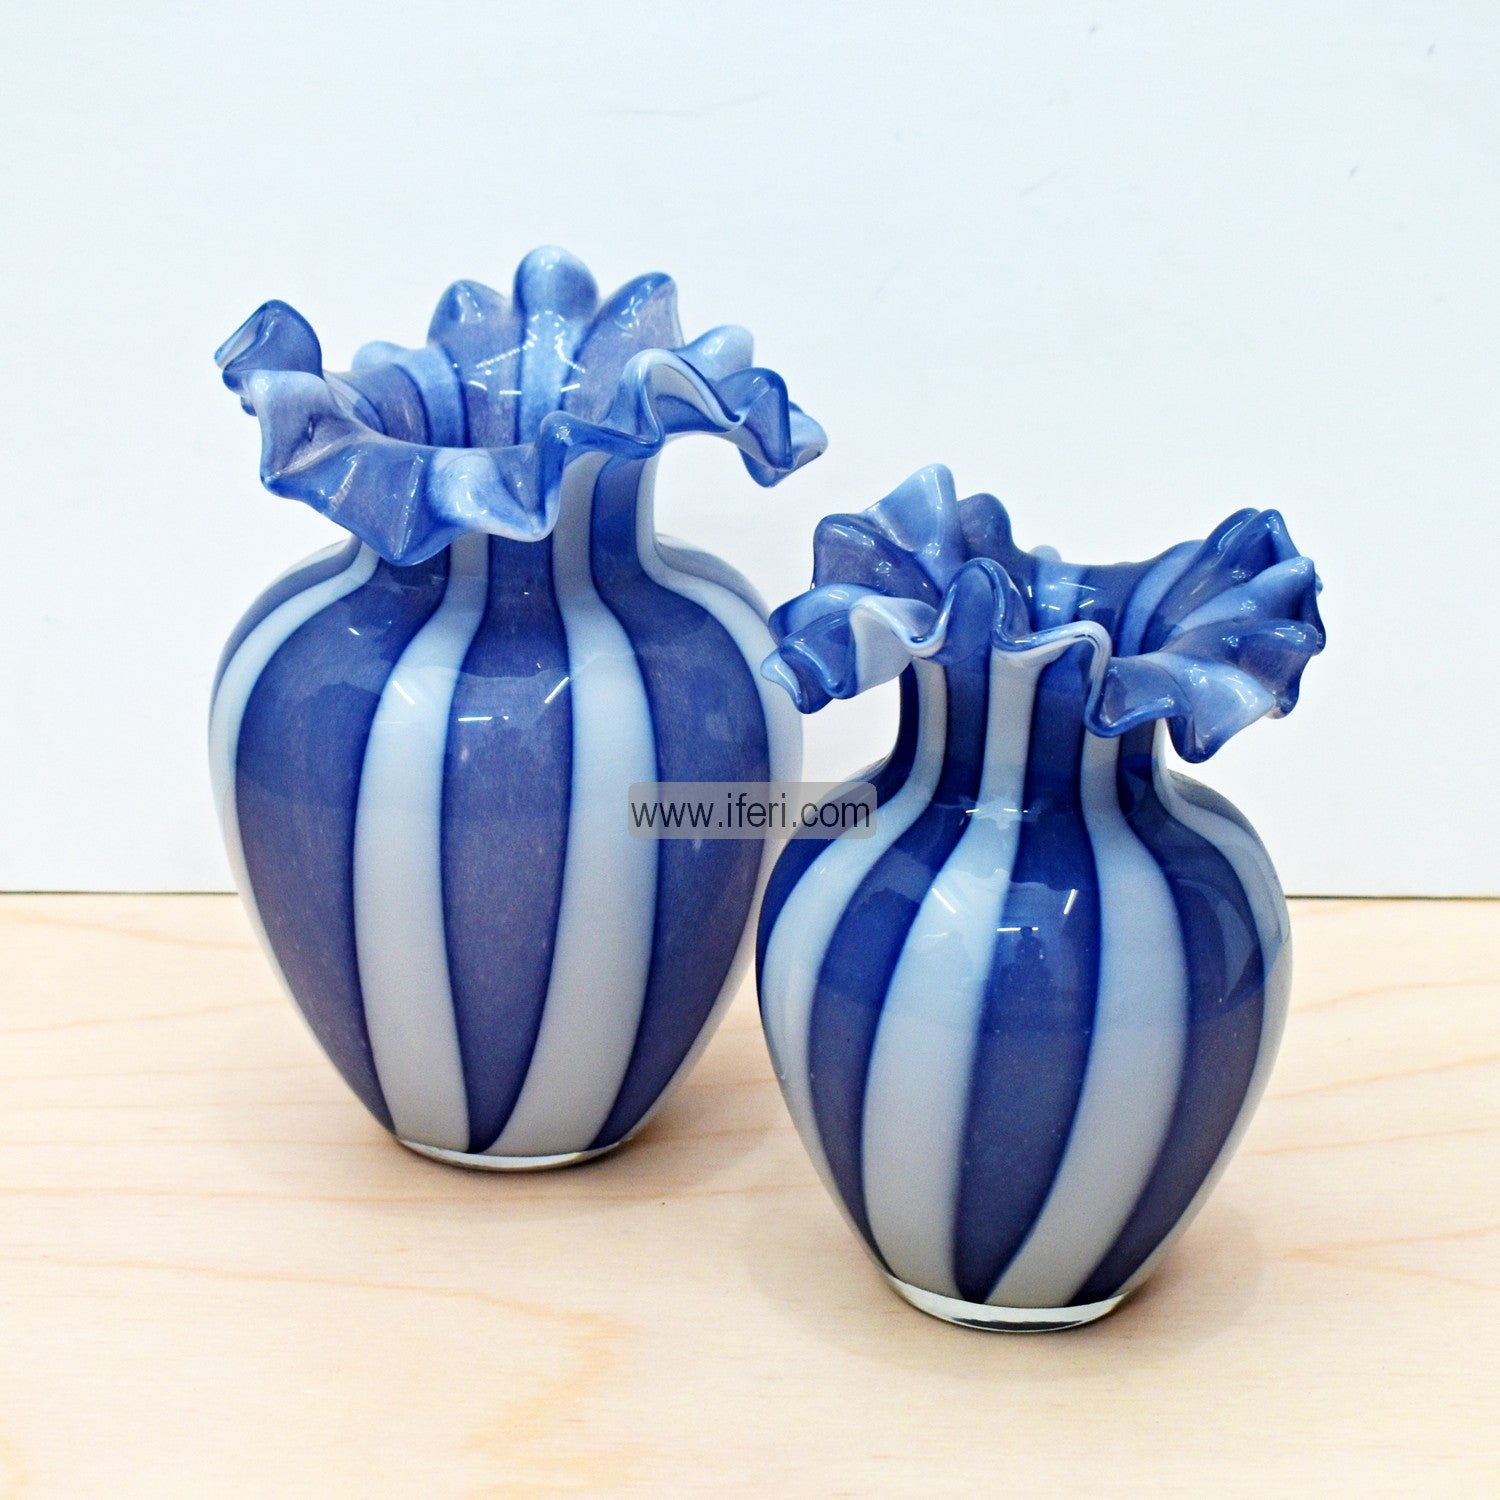 2 Pcs Glass Decorative Flower Vase FT1366